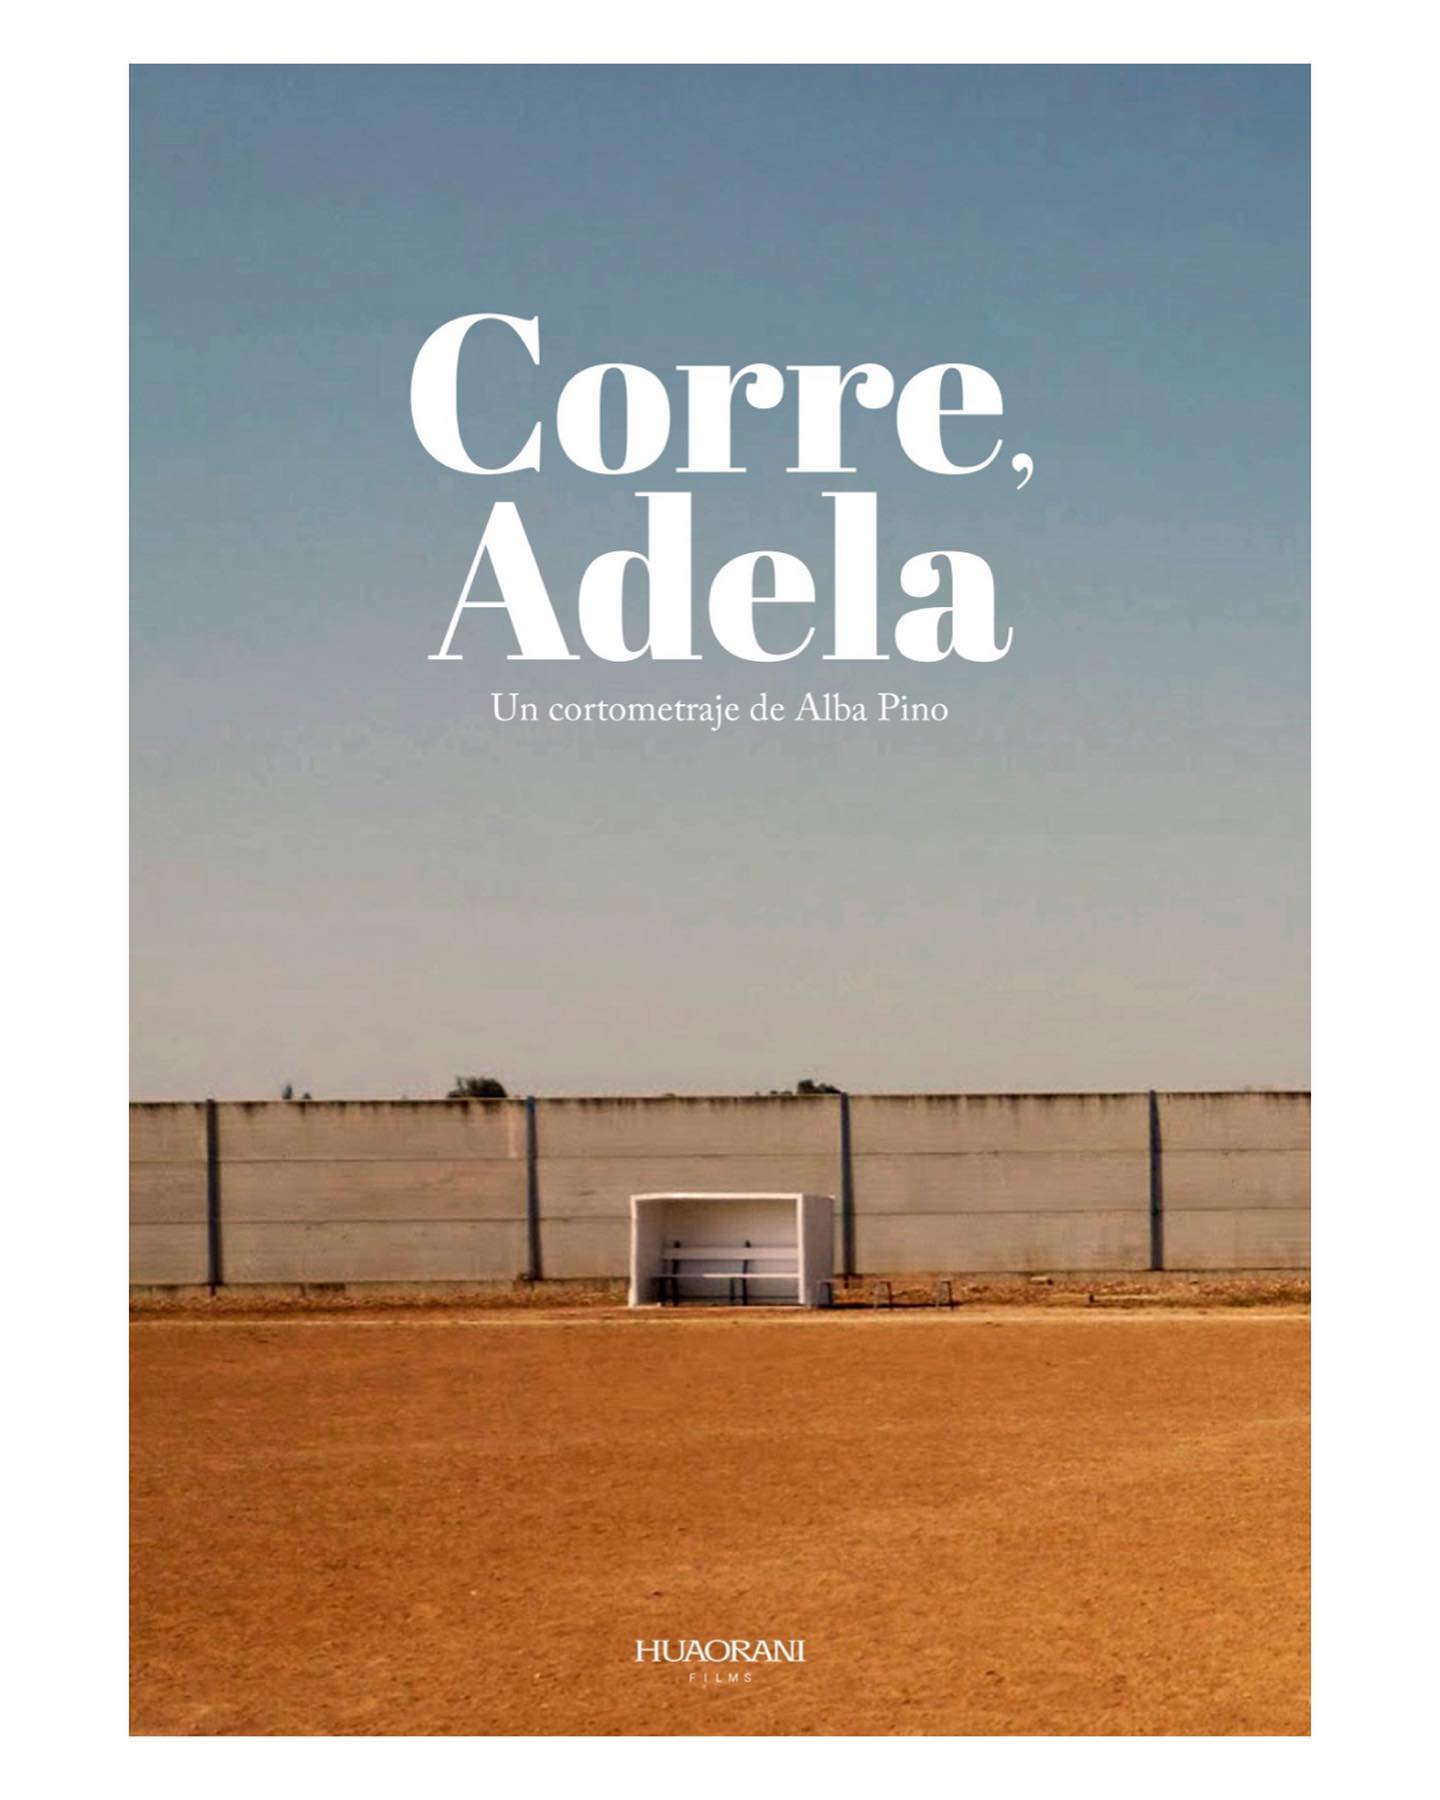 Cartel del cortometraje 'Corre, Adela' dirigido por Alba Pino, presentando un campo vacío con el fondo de un muro alto, simbolizando la niñez y aspiraciones en Galicia.